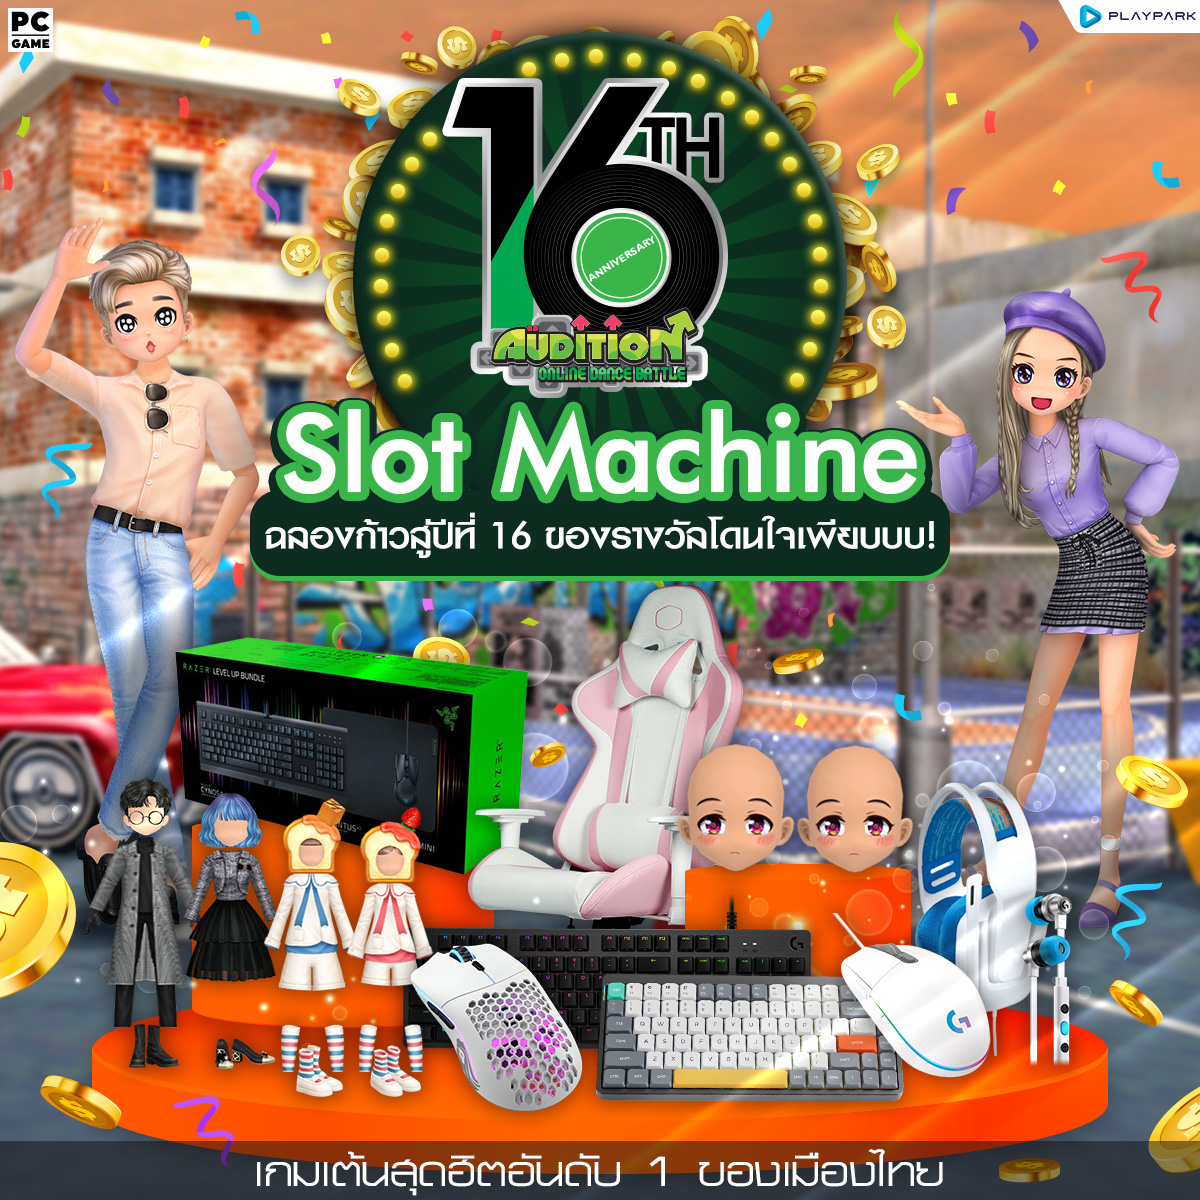 3 สิงหาคมนี้ Update เพลงใหม่, 16 Year Anniversary Slot Machine, EXP x2 และไอเทมใหม่!!  